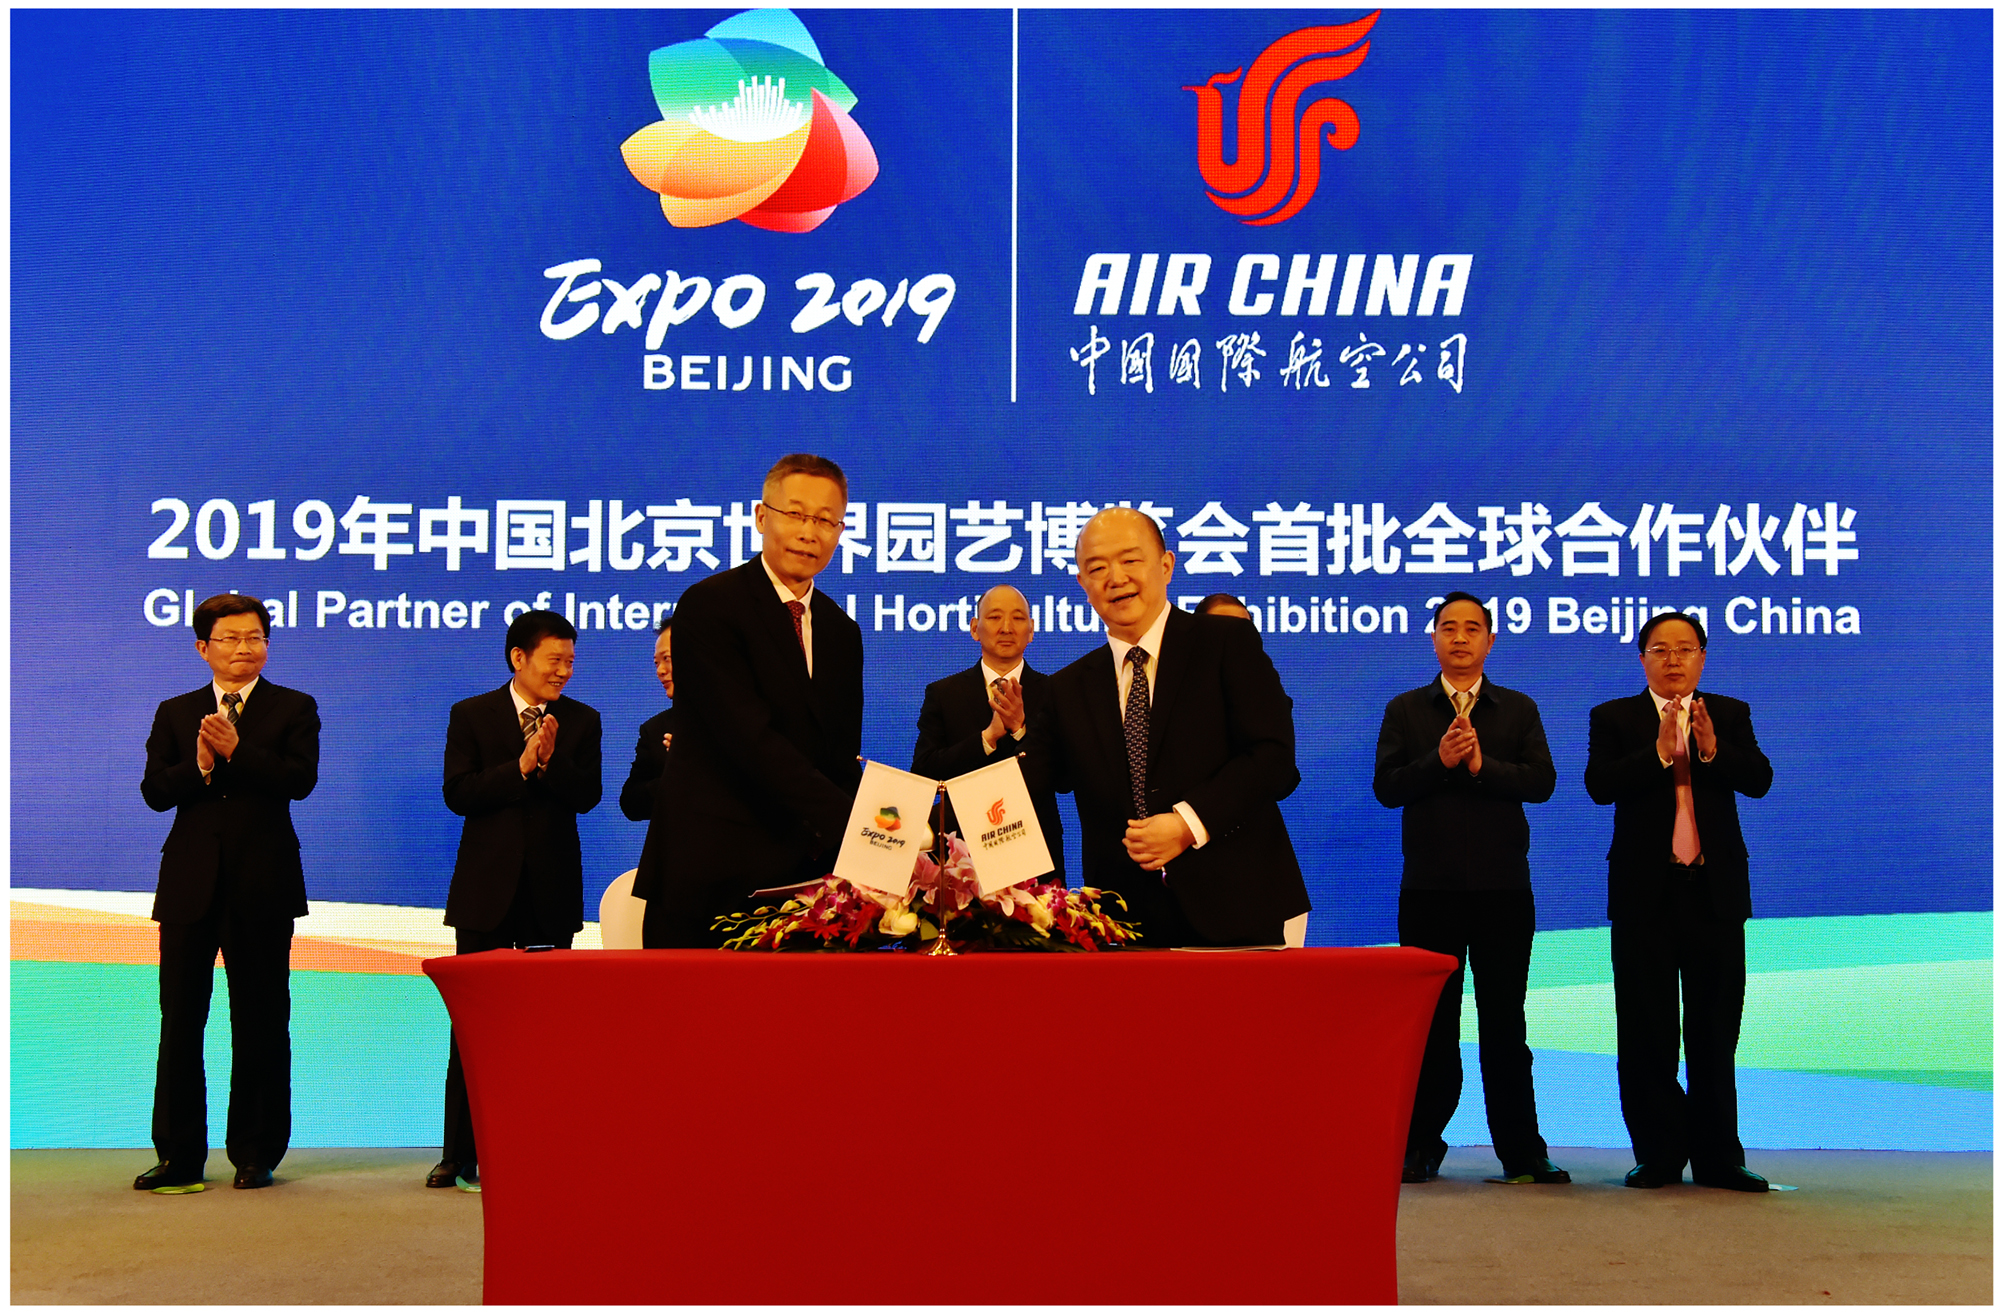 国航成为北京“世园会”全球合作伙伴和航空类唯一赞助商